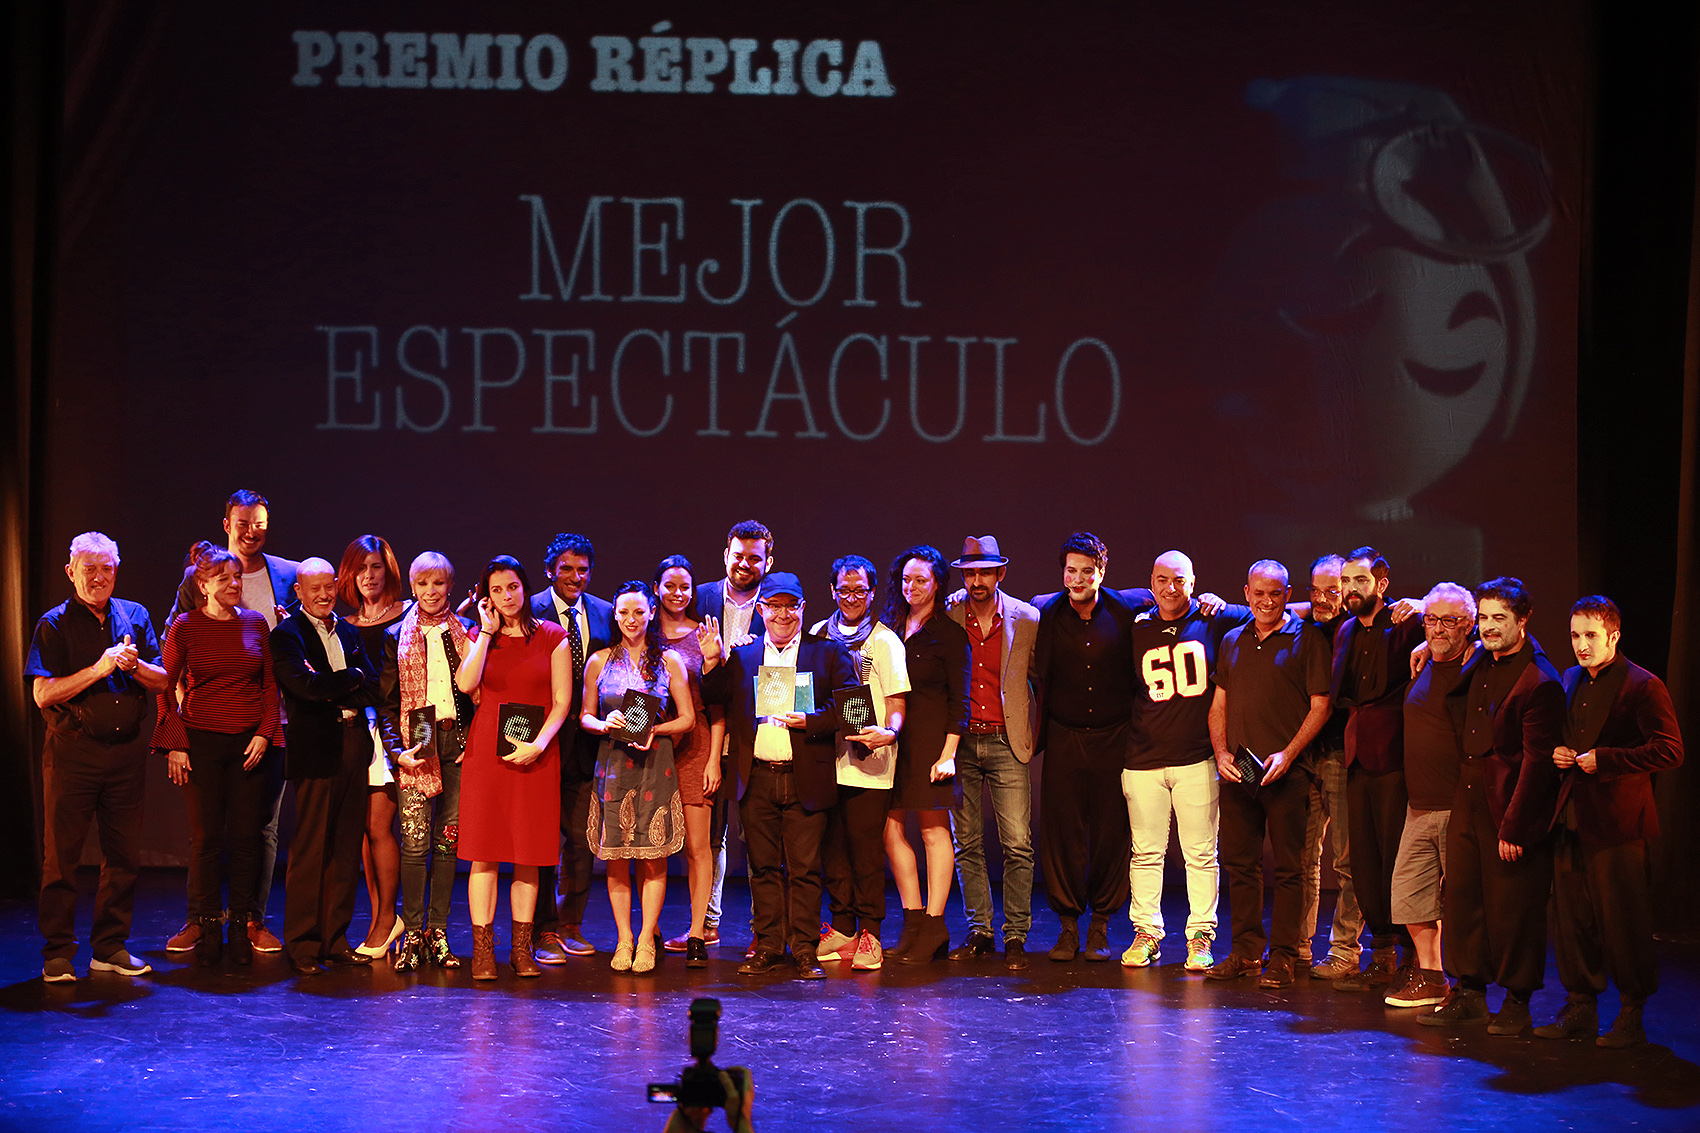 El jurado de los IX Premios Réplica se amplía a otras miradas internacionales